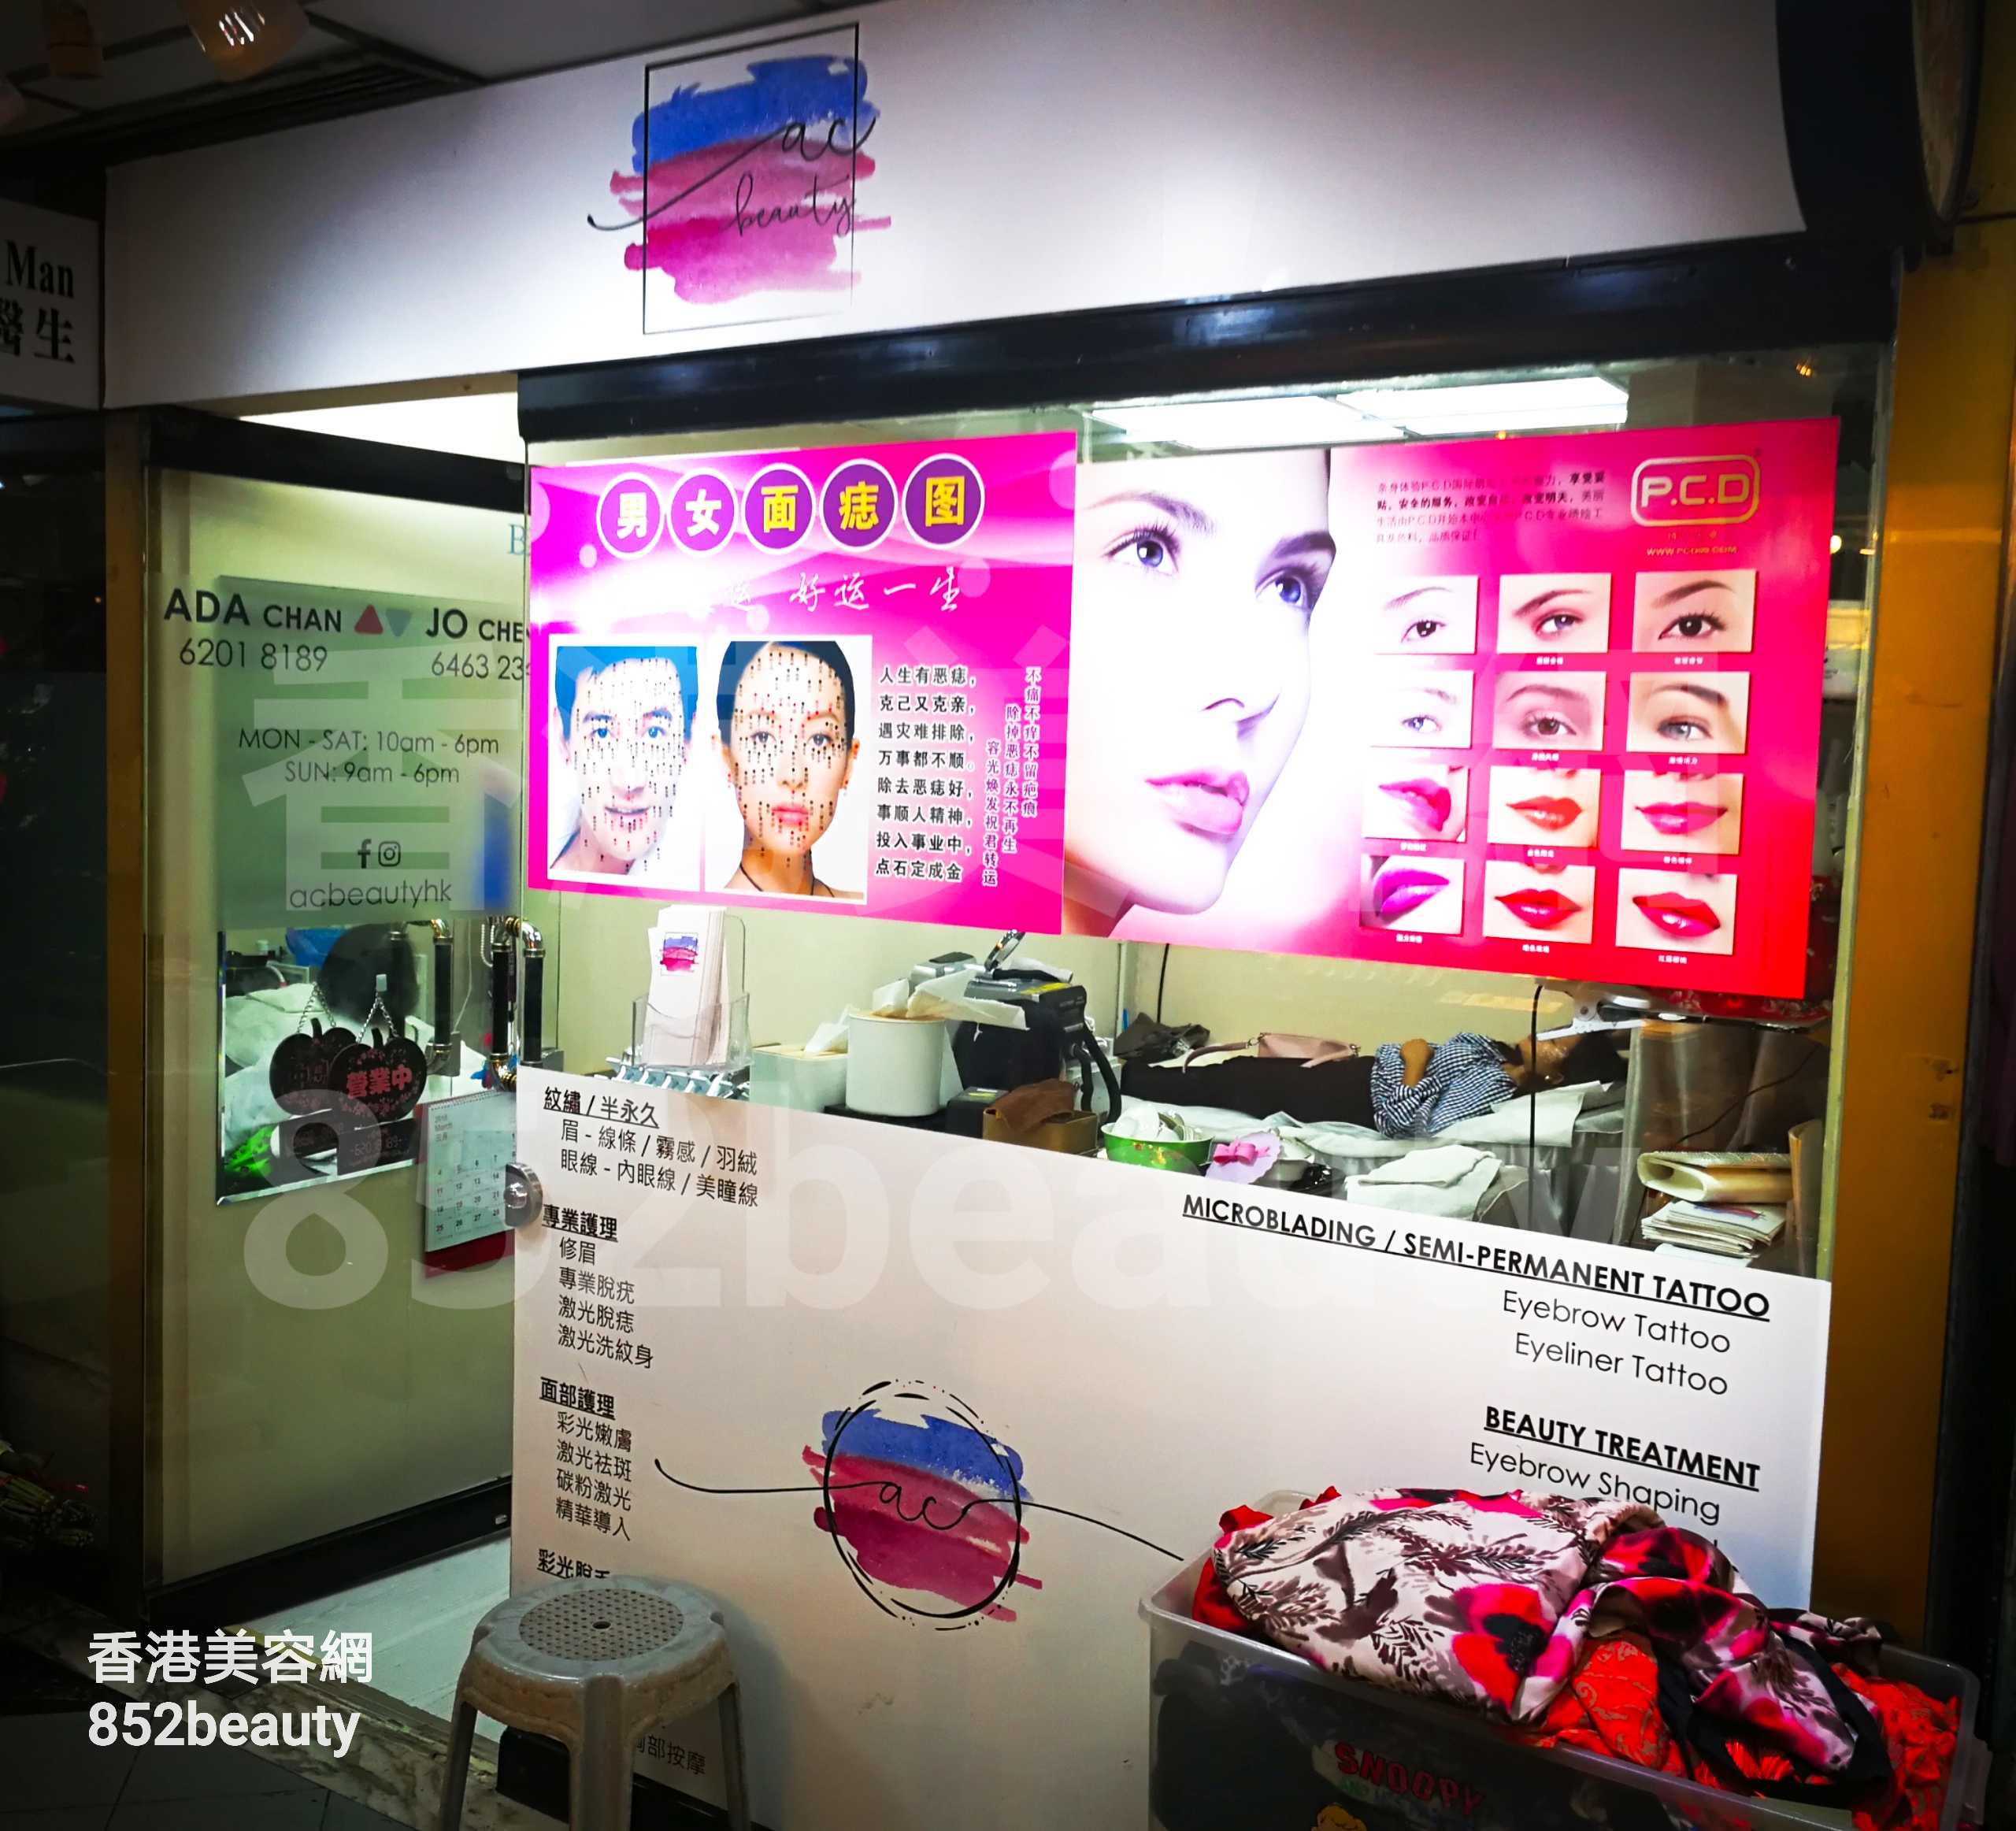 香港美容網 Hong Kong Beauty Salon 美容院 / 美容師: ac beauty